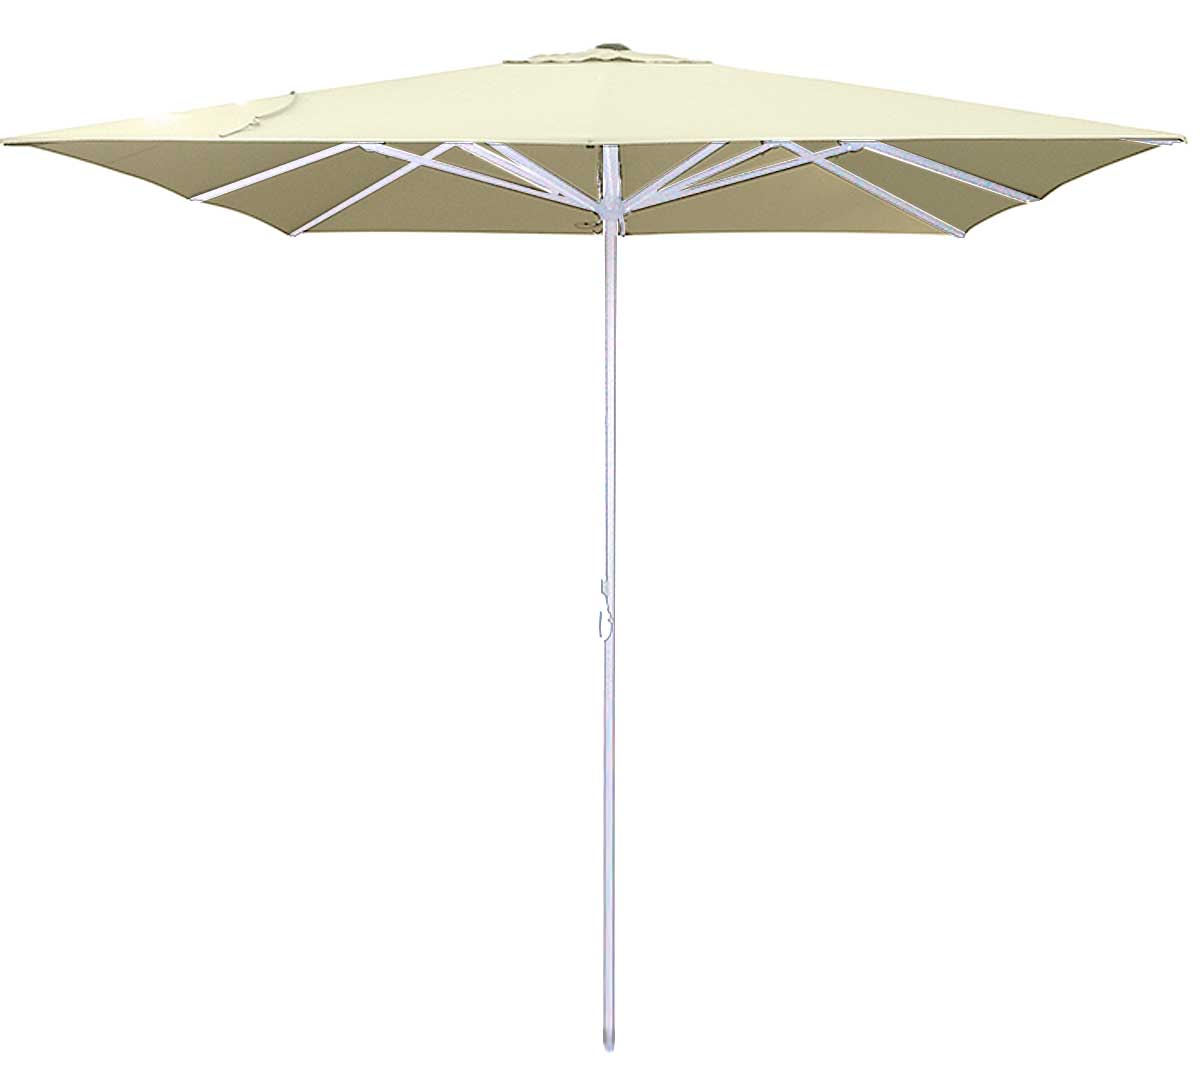 conva-parasol-aluminio-heavy-duty-899-b-crudo-01